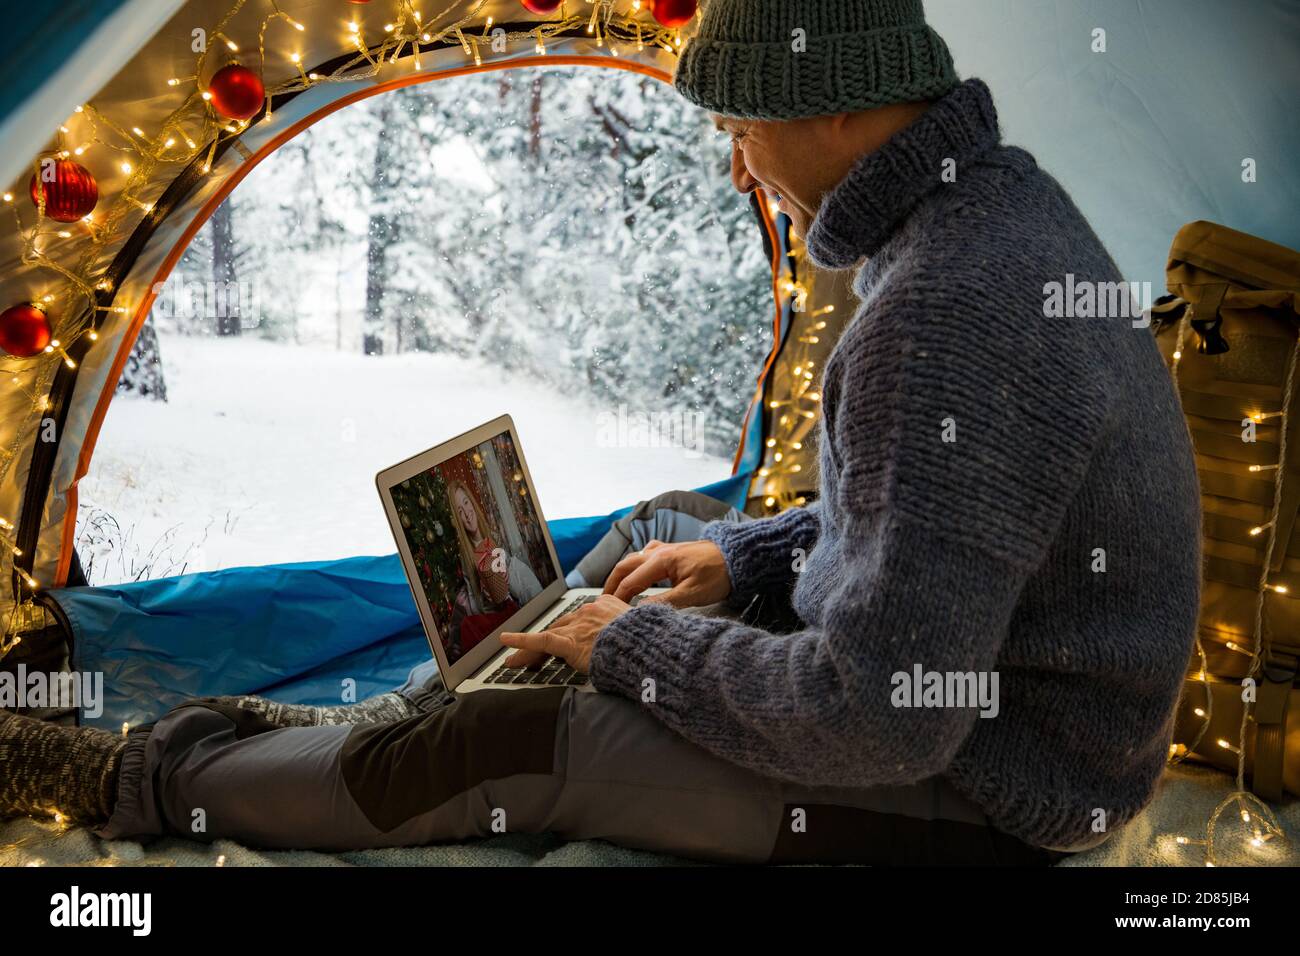 Mann sitzt im Zelt mit Weihnachtsbeleuchtung geschmückt, mit Laptop. Videoanruf. Skandinavische Landschaft, mit Schnee bedeckter Wald. Selbstisolierung Stockfoto